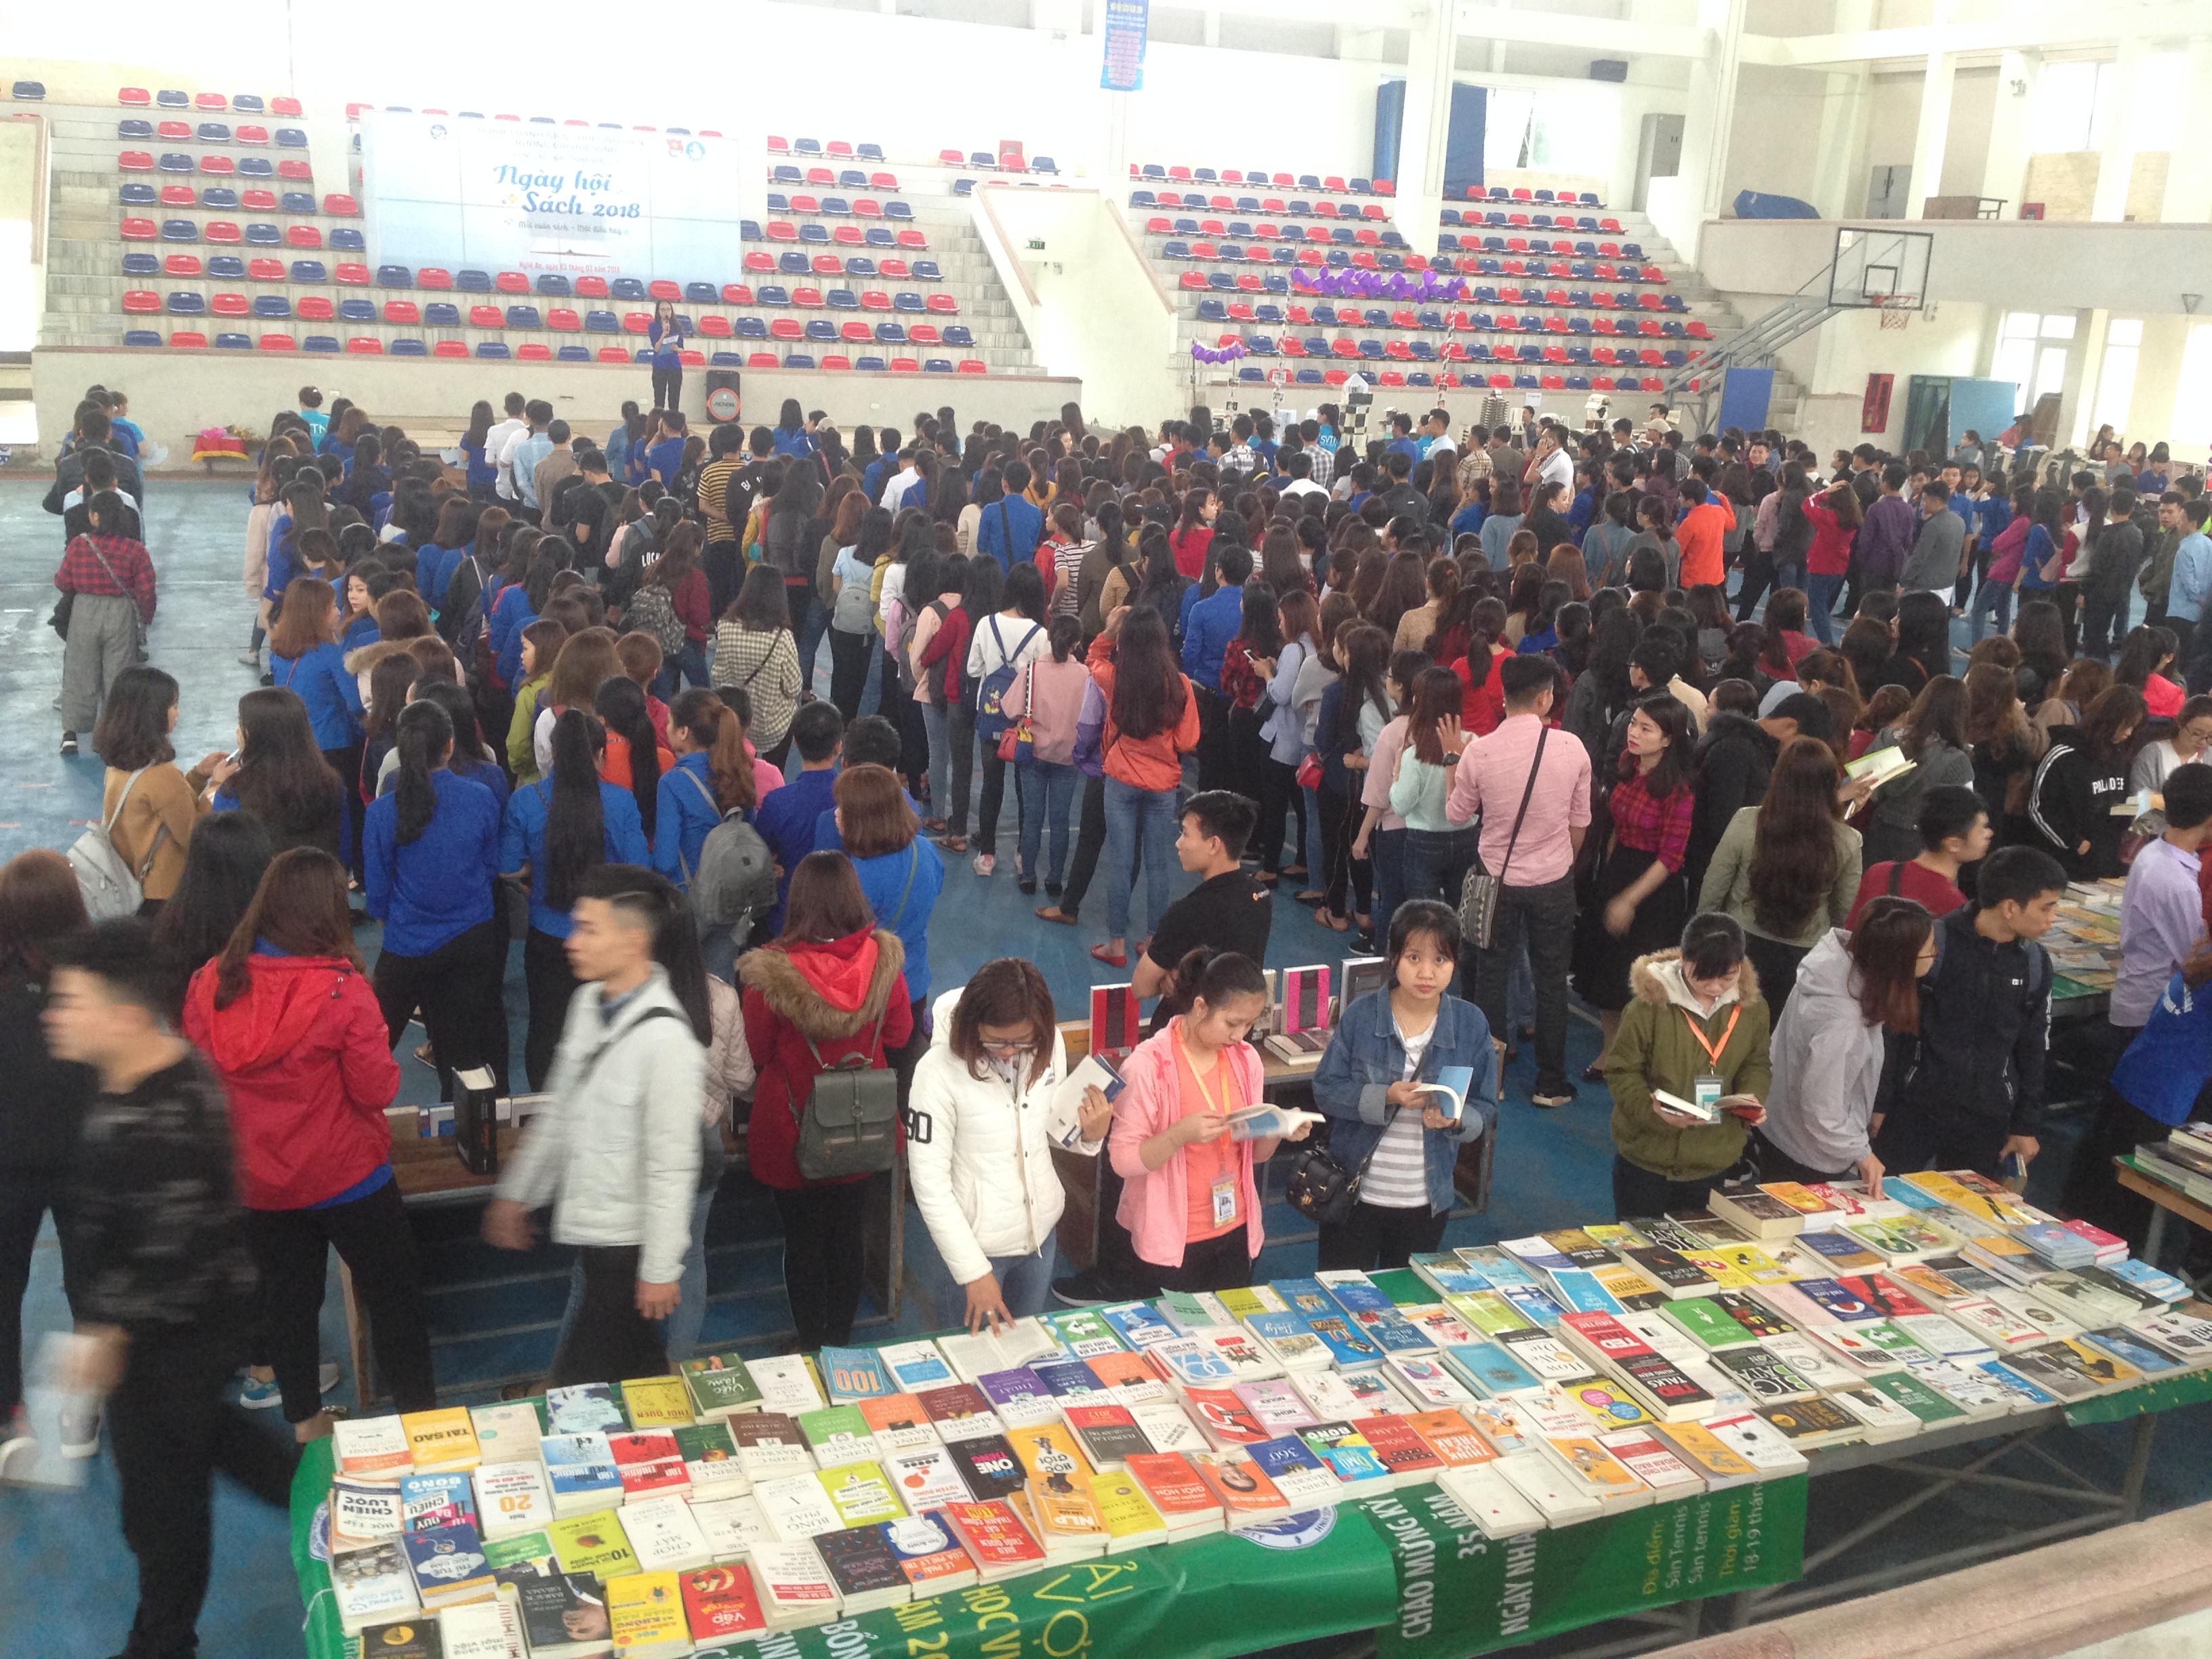 Hàng ngàn sinh viên đã đến với Ngày hội sách để tìm cơ hội tiếp cận với các đầu sách miễn phí. Ảnh: Vũ Hà